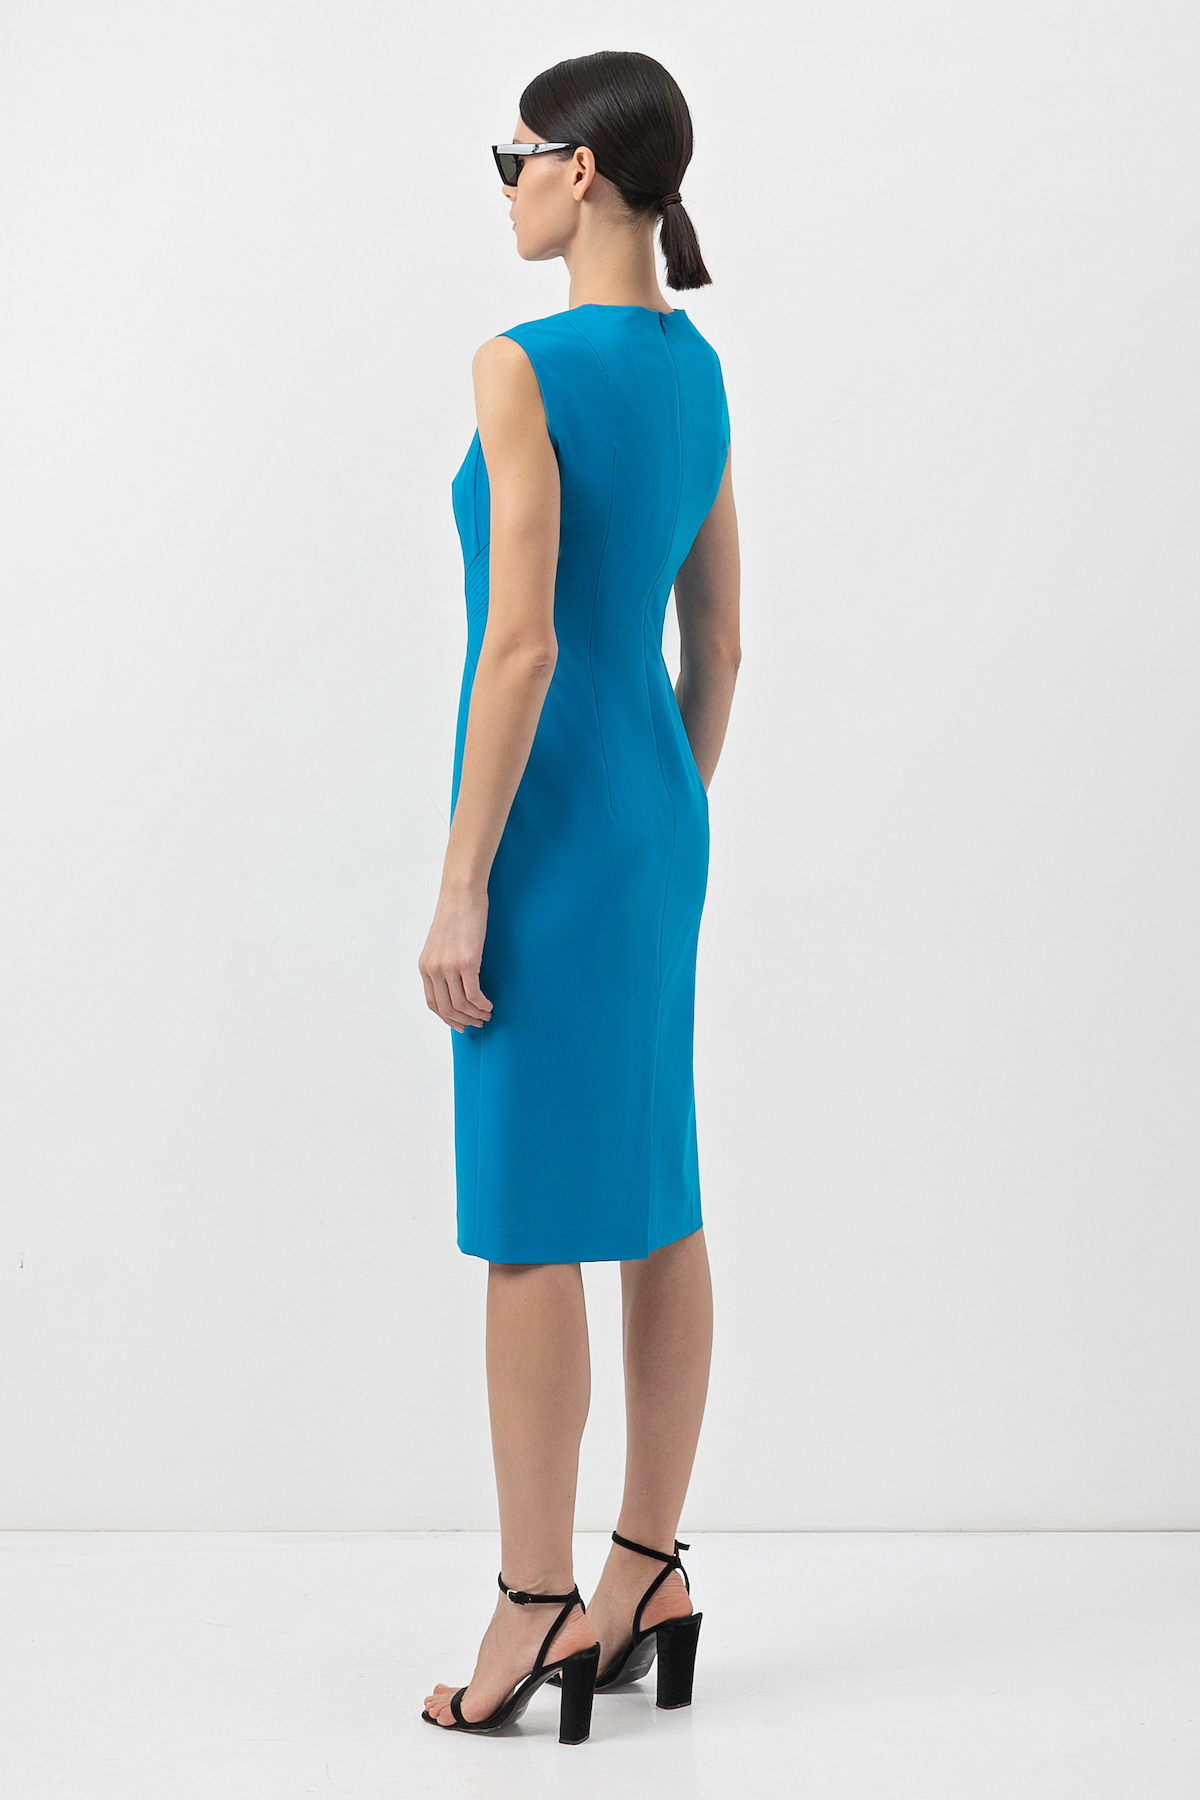 Платье в синем оттенке VASSA&Co от VASSA & Co.